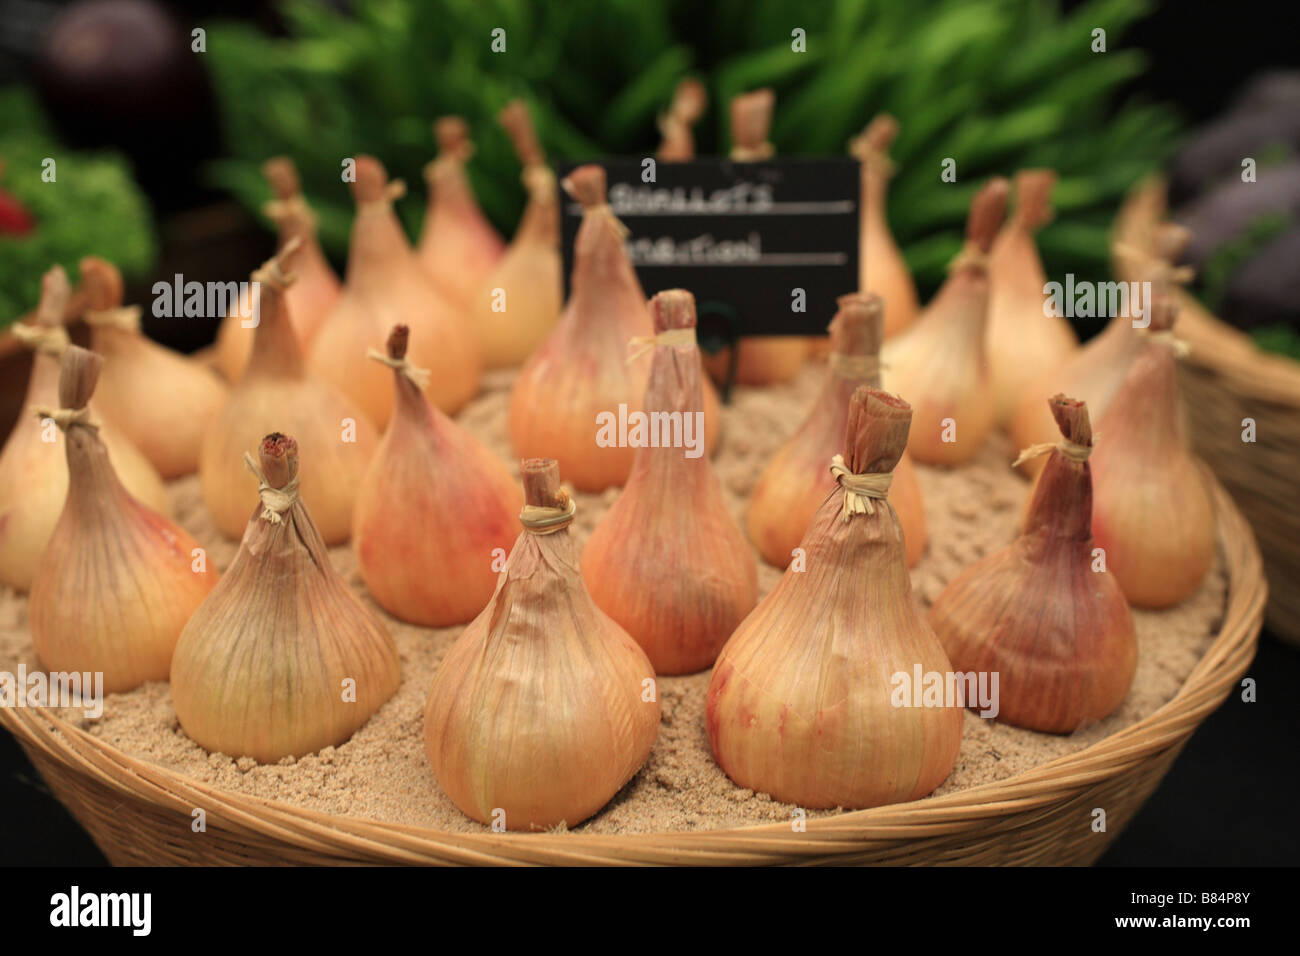 "Cipolla' impostato bulbi piantati in un vaso in terracotta come parte di un vegetale RHS display. Splendidamente posizionato per la mostra dei fiori. Foto Stock